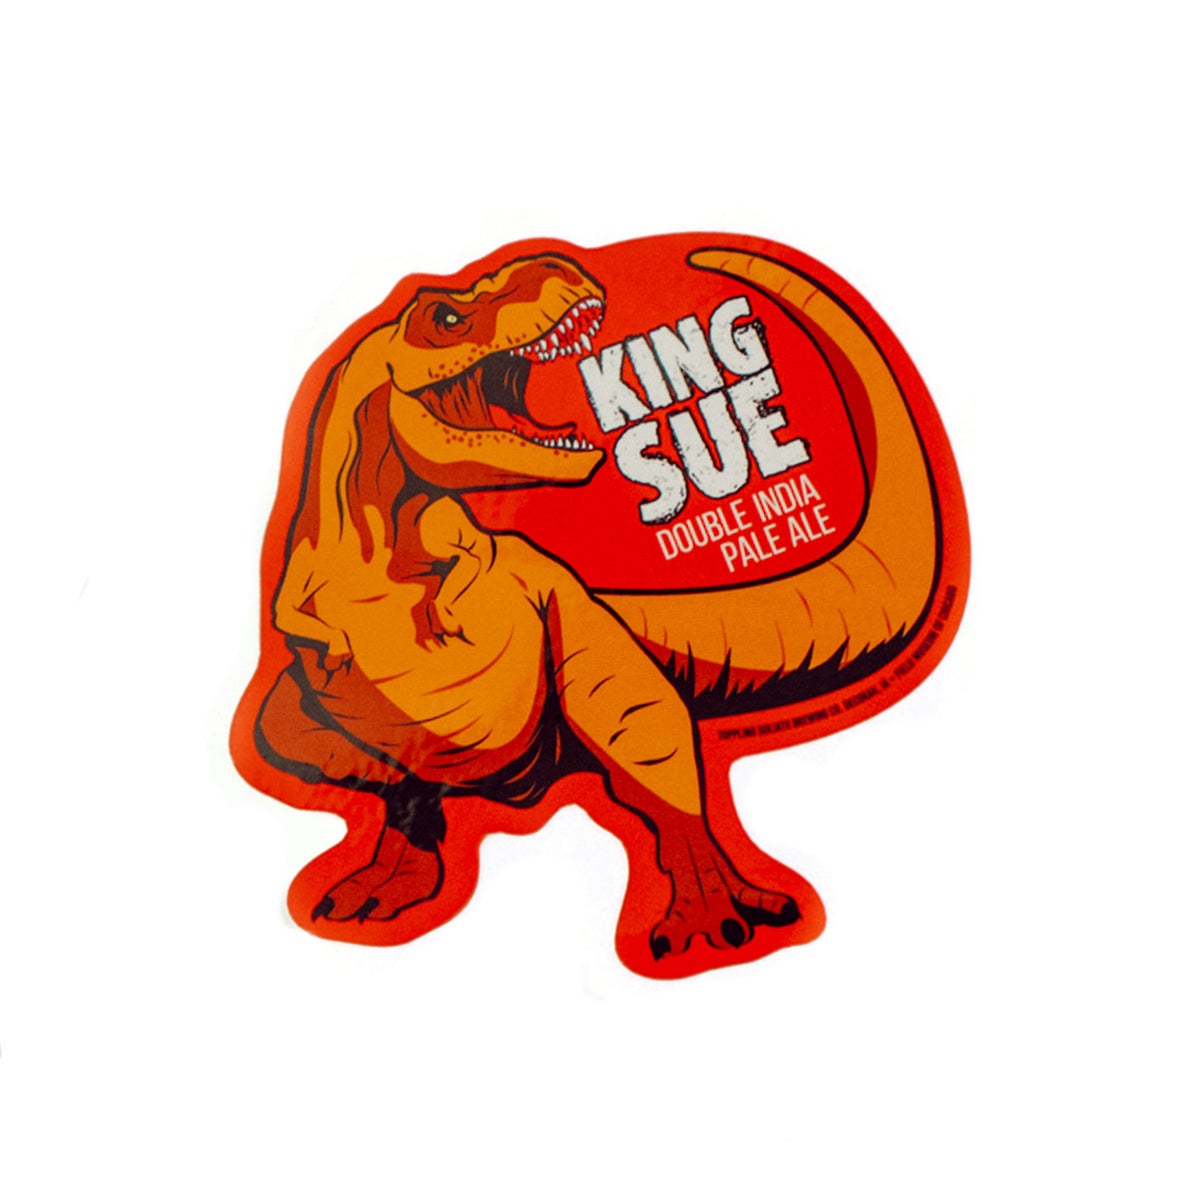 King Sue Sticker